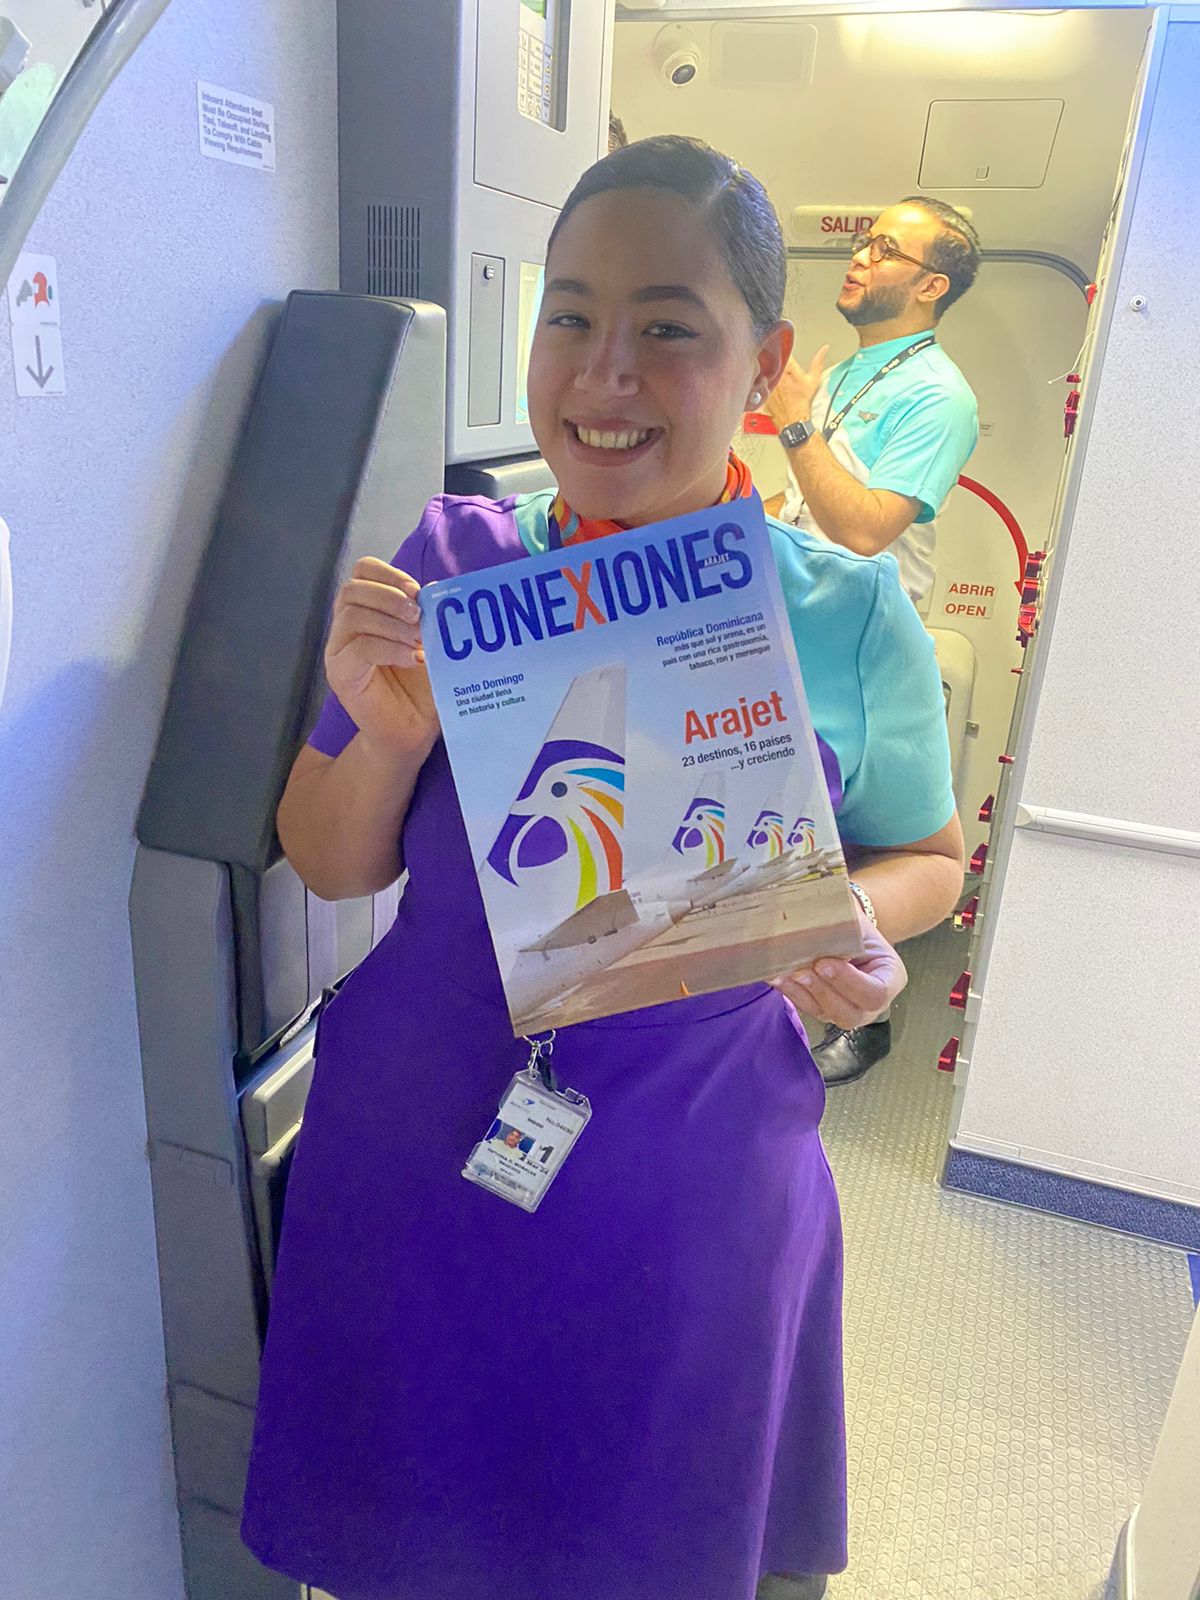 Arajet lanza la primera edición de su revista a bordo “Conexiones Arajet”      